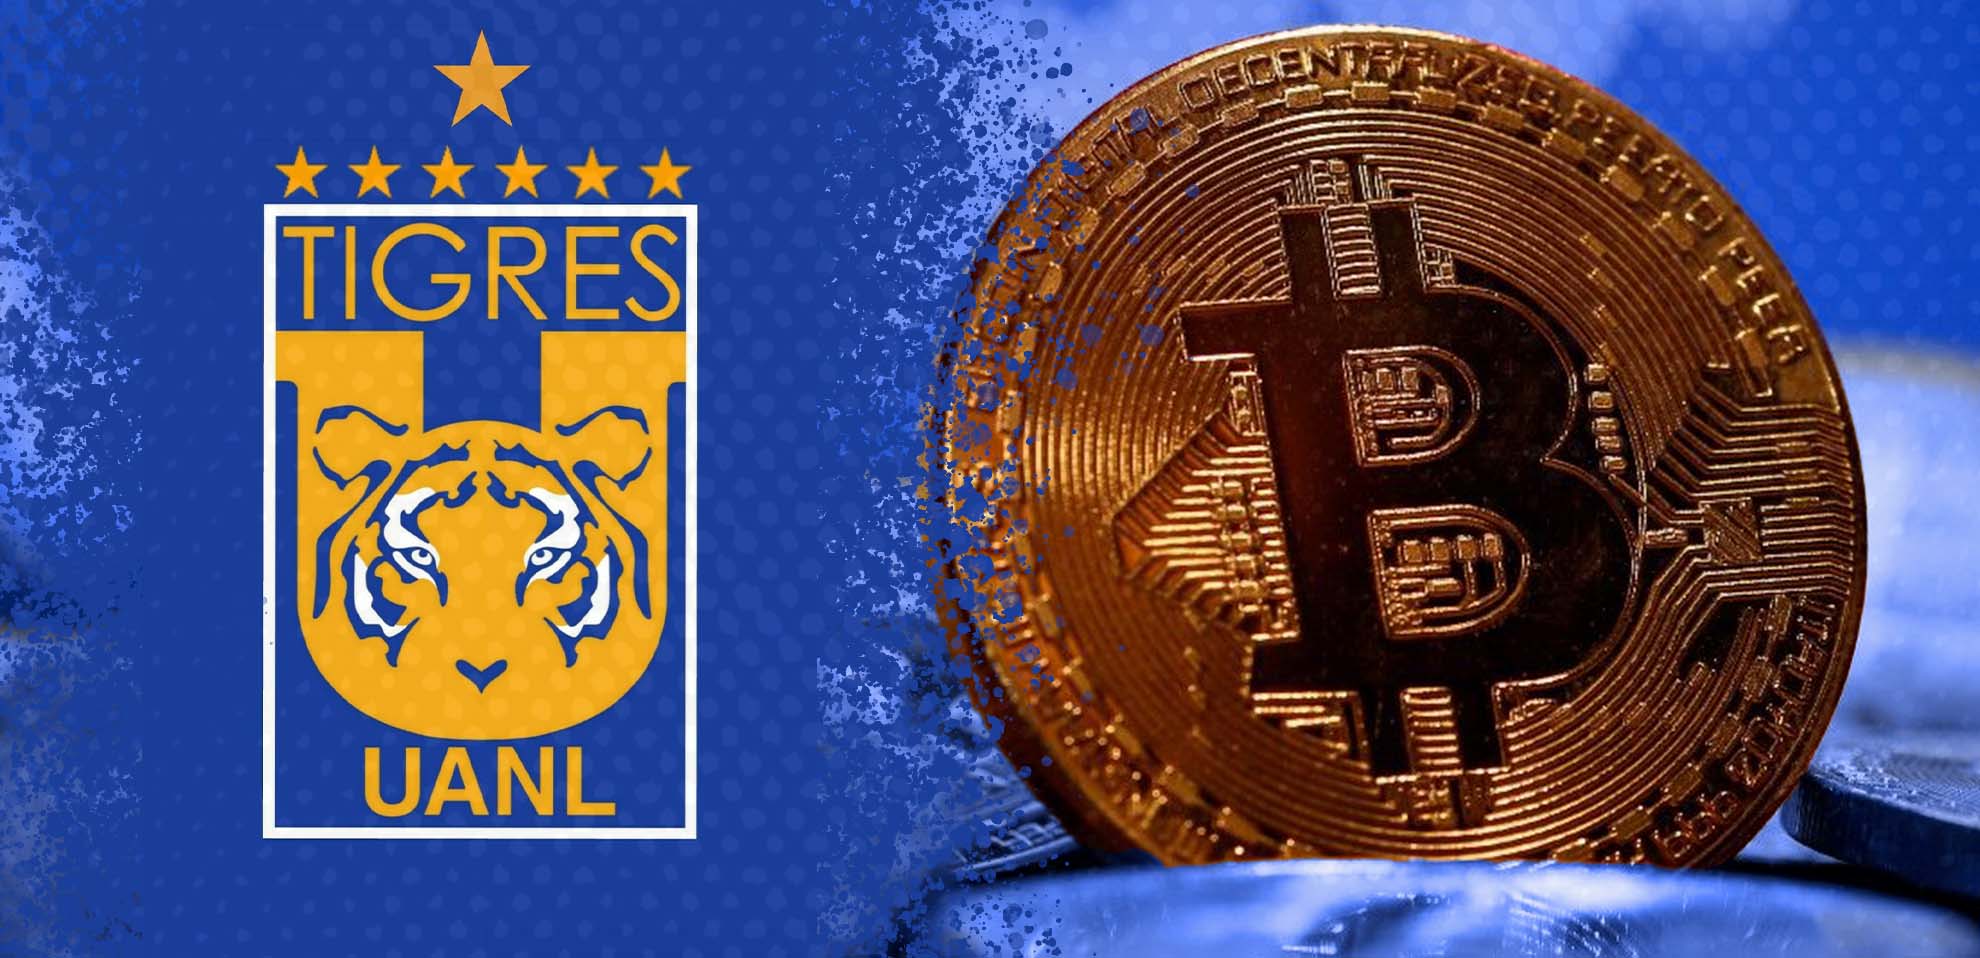 Tigres y bitcoin